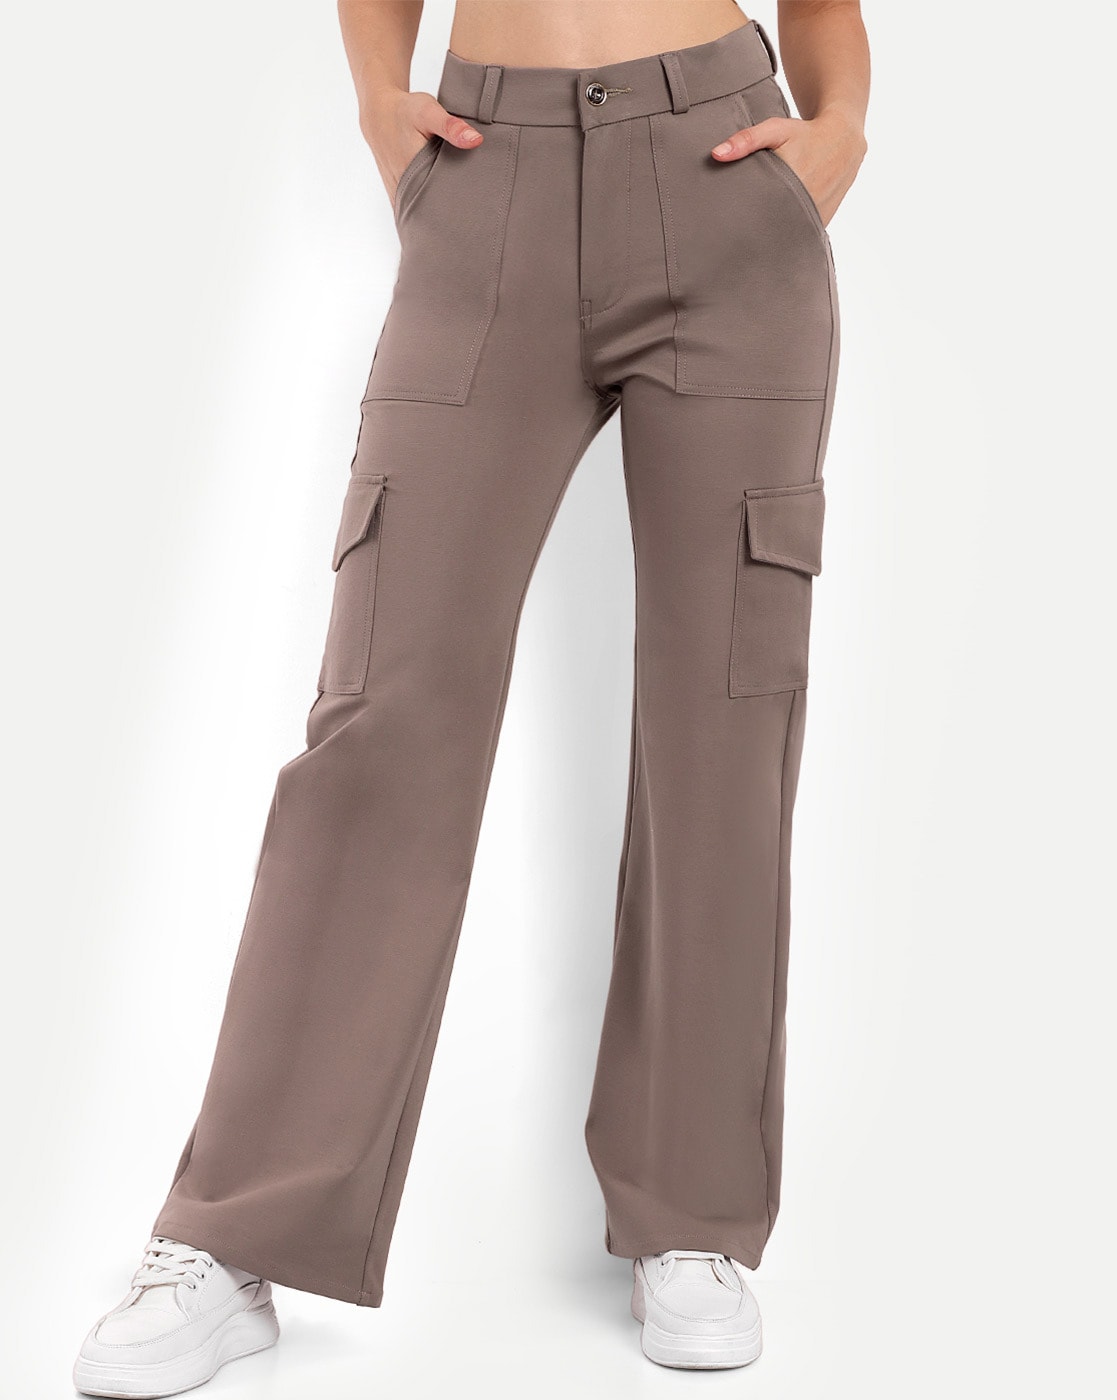 Buy Fuschia Pink Trousers & Pants for Women by AJIO Online | Ajio.com